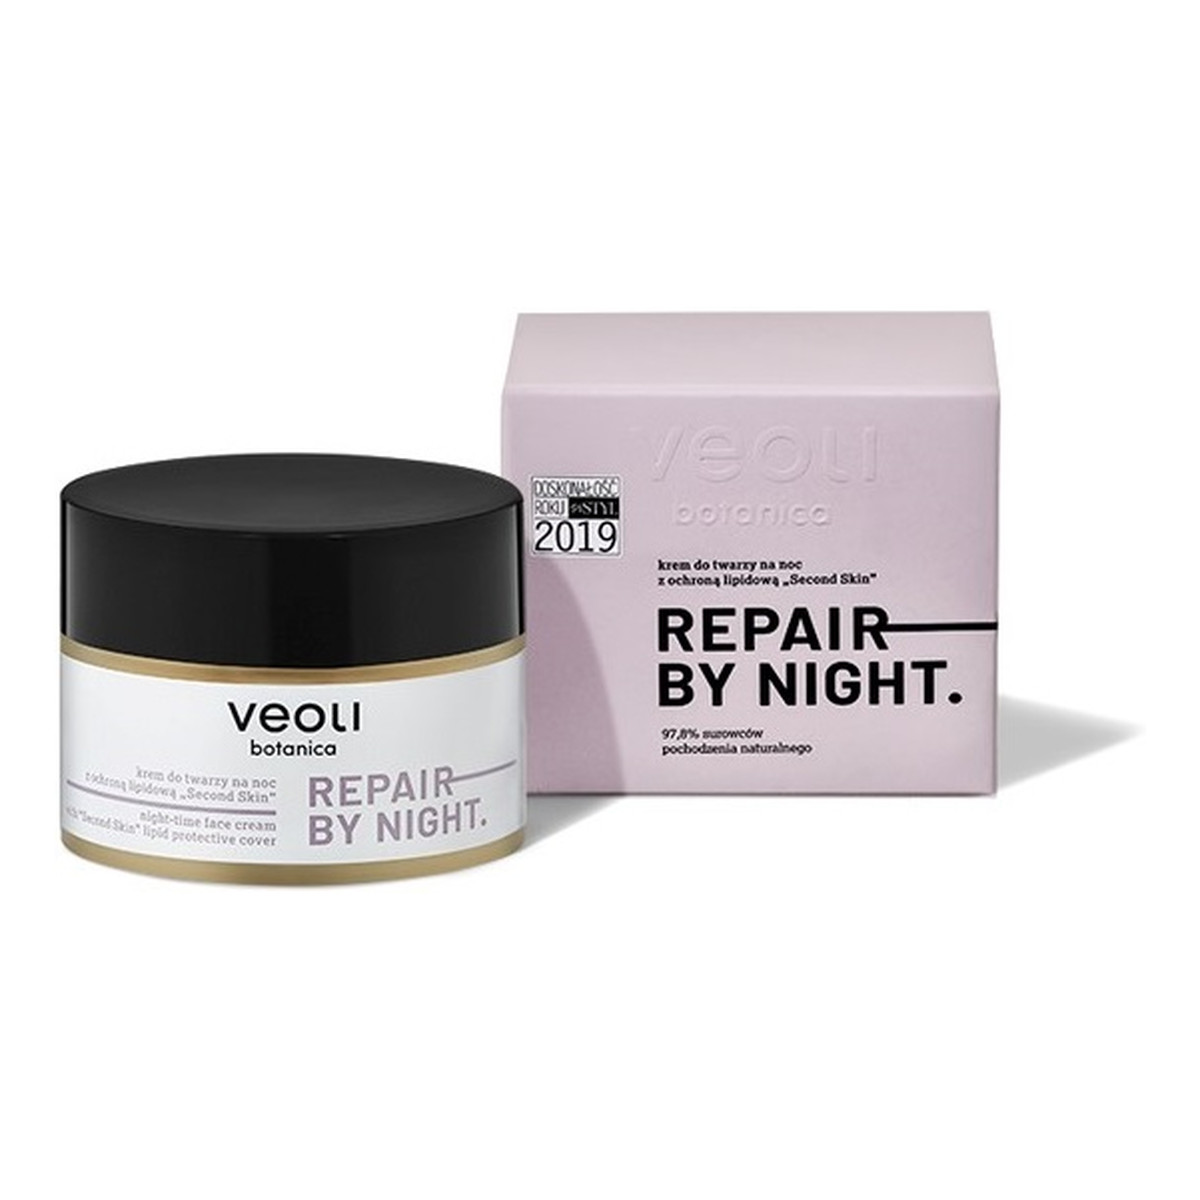 Veoli Botanica Repair By Night Cream Krem do twarzy z ochroną lipidową na noc 50ml